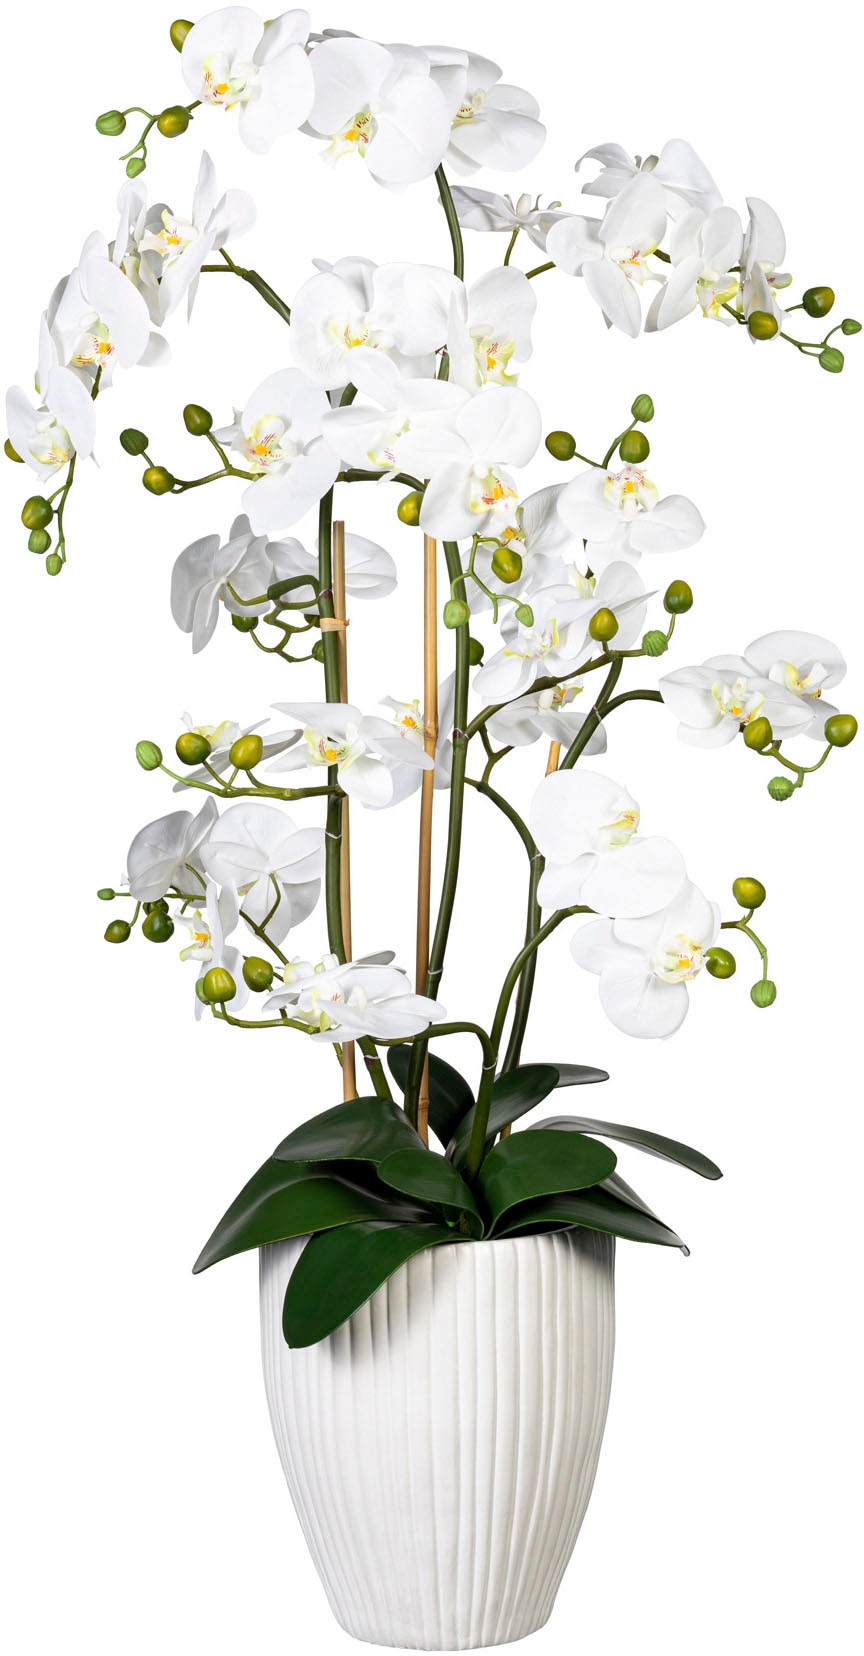 green »Deko-Orchidee XL auf Keramiktopf« Kunstorchidee Rechnung Creativ Phalaenopsis bestellen im